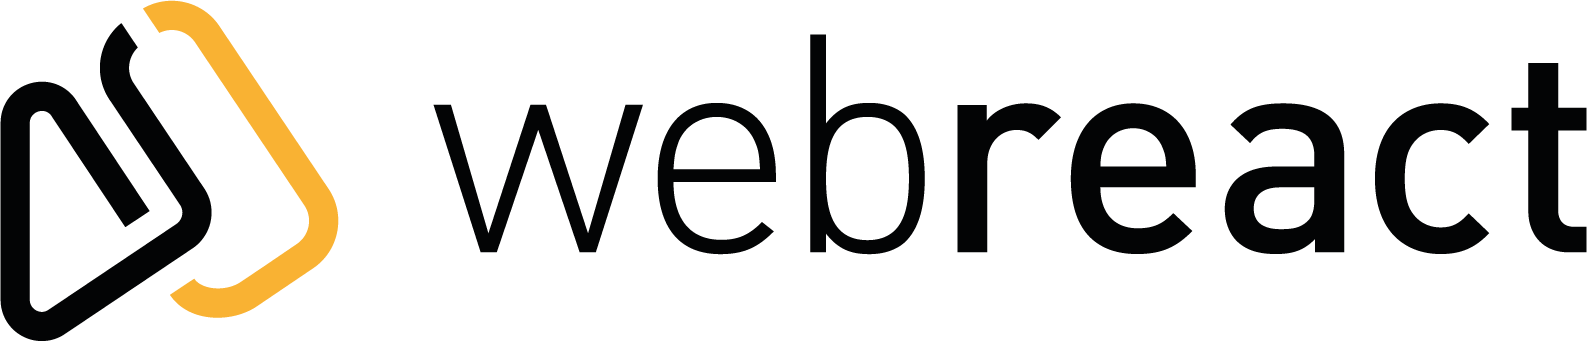 Webreact logo